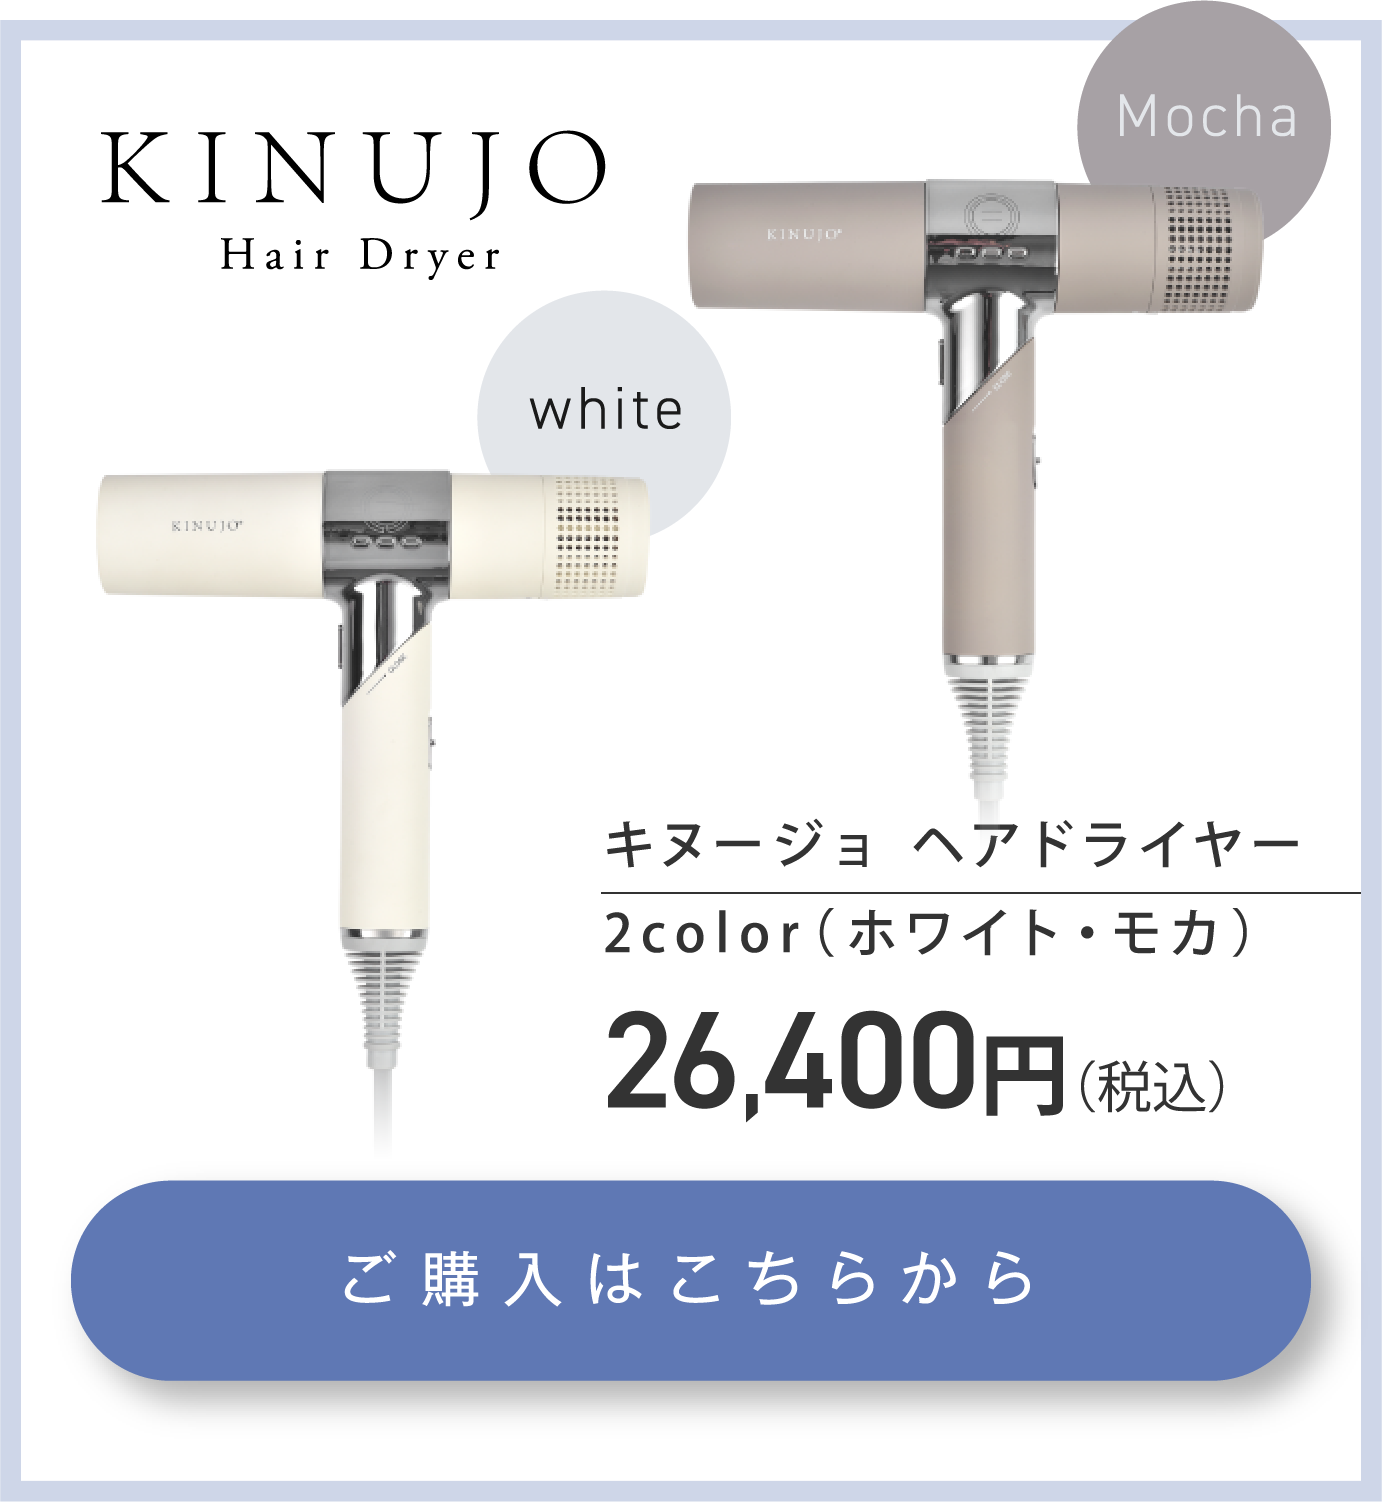 KINUJO Hair Dryer】ここから変わる、新しい私のカタチ。 |